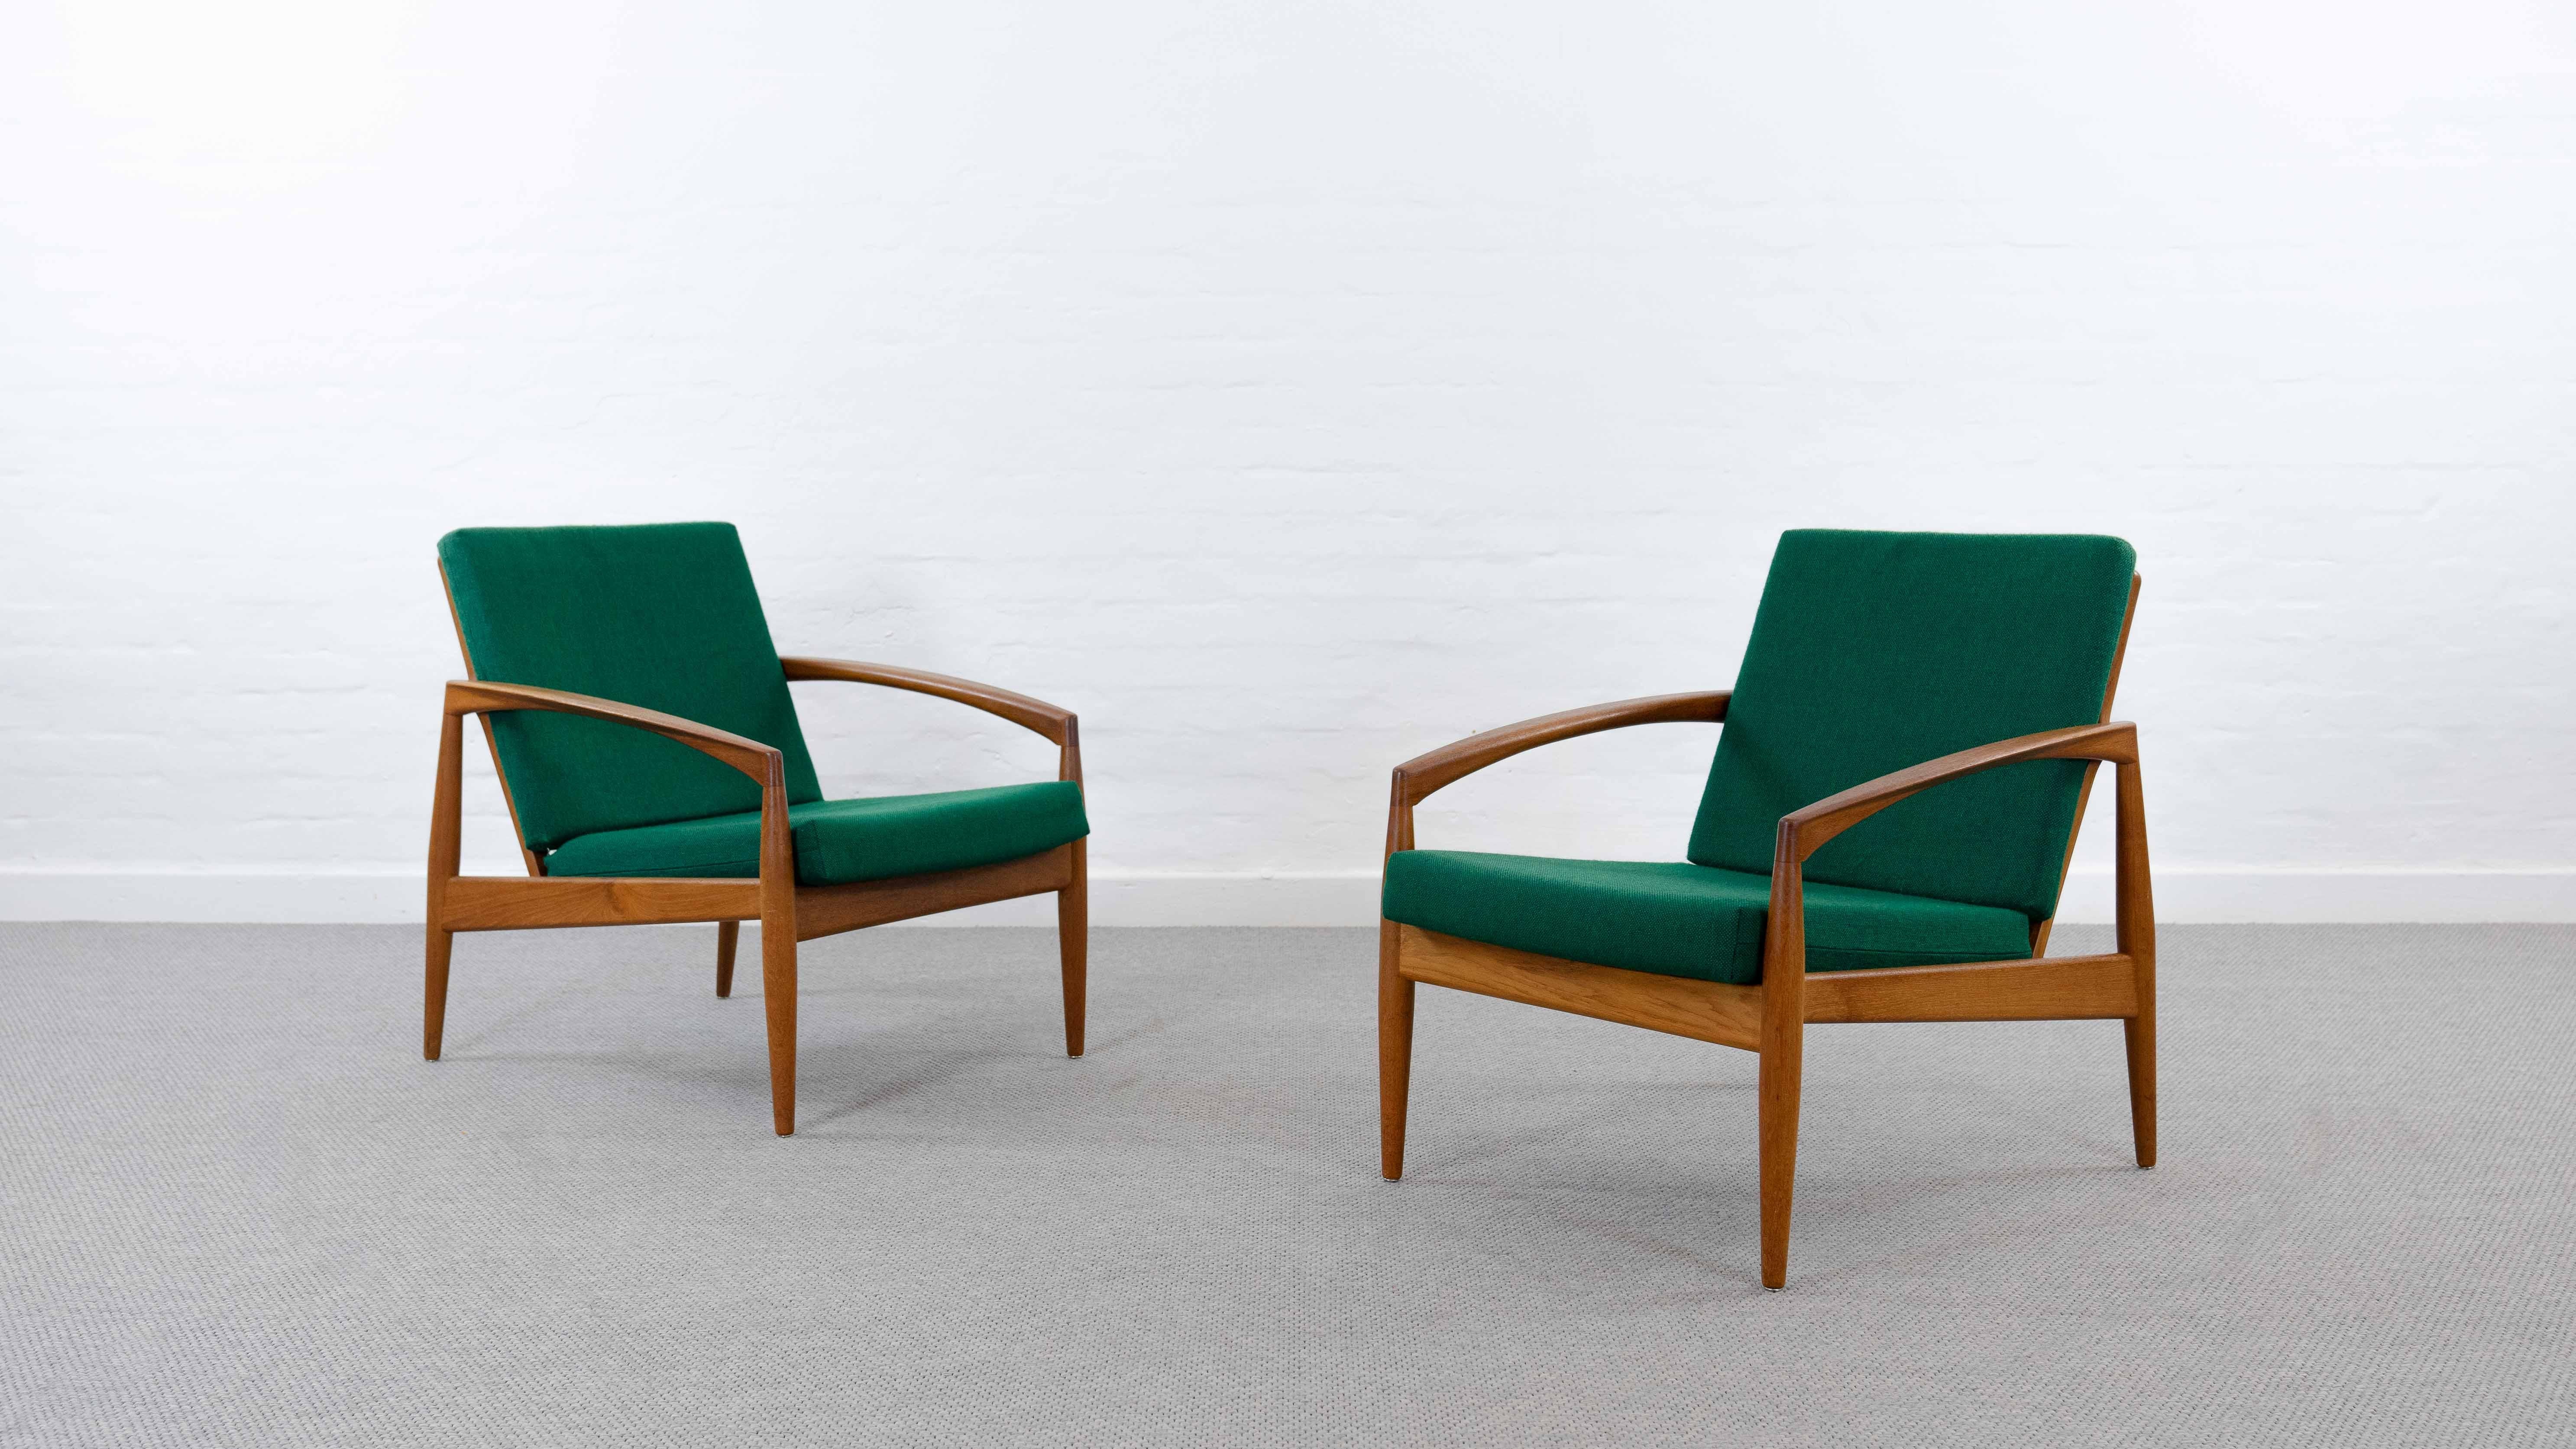 Ein Paar dänische Sessel, entworfen 1955 von Kai Kristiansen für Magnus Olesen. Modell Nr. 121. So genannte 